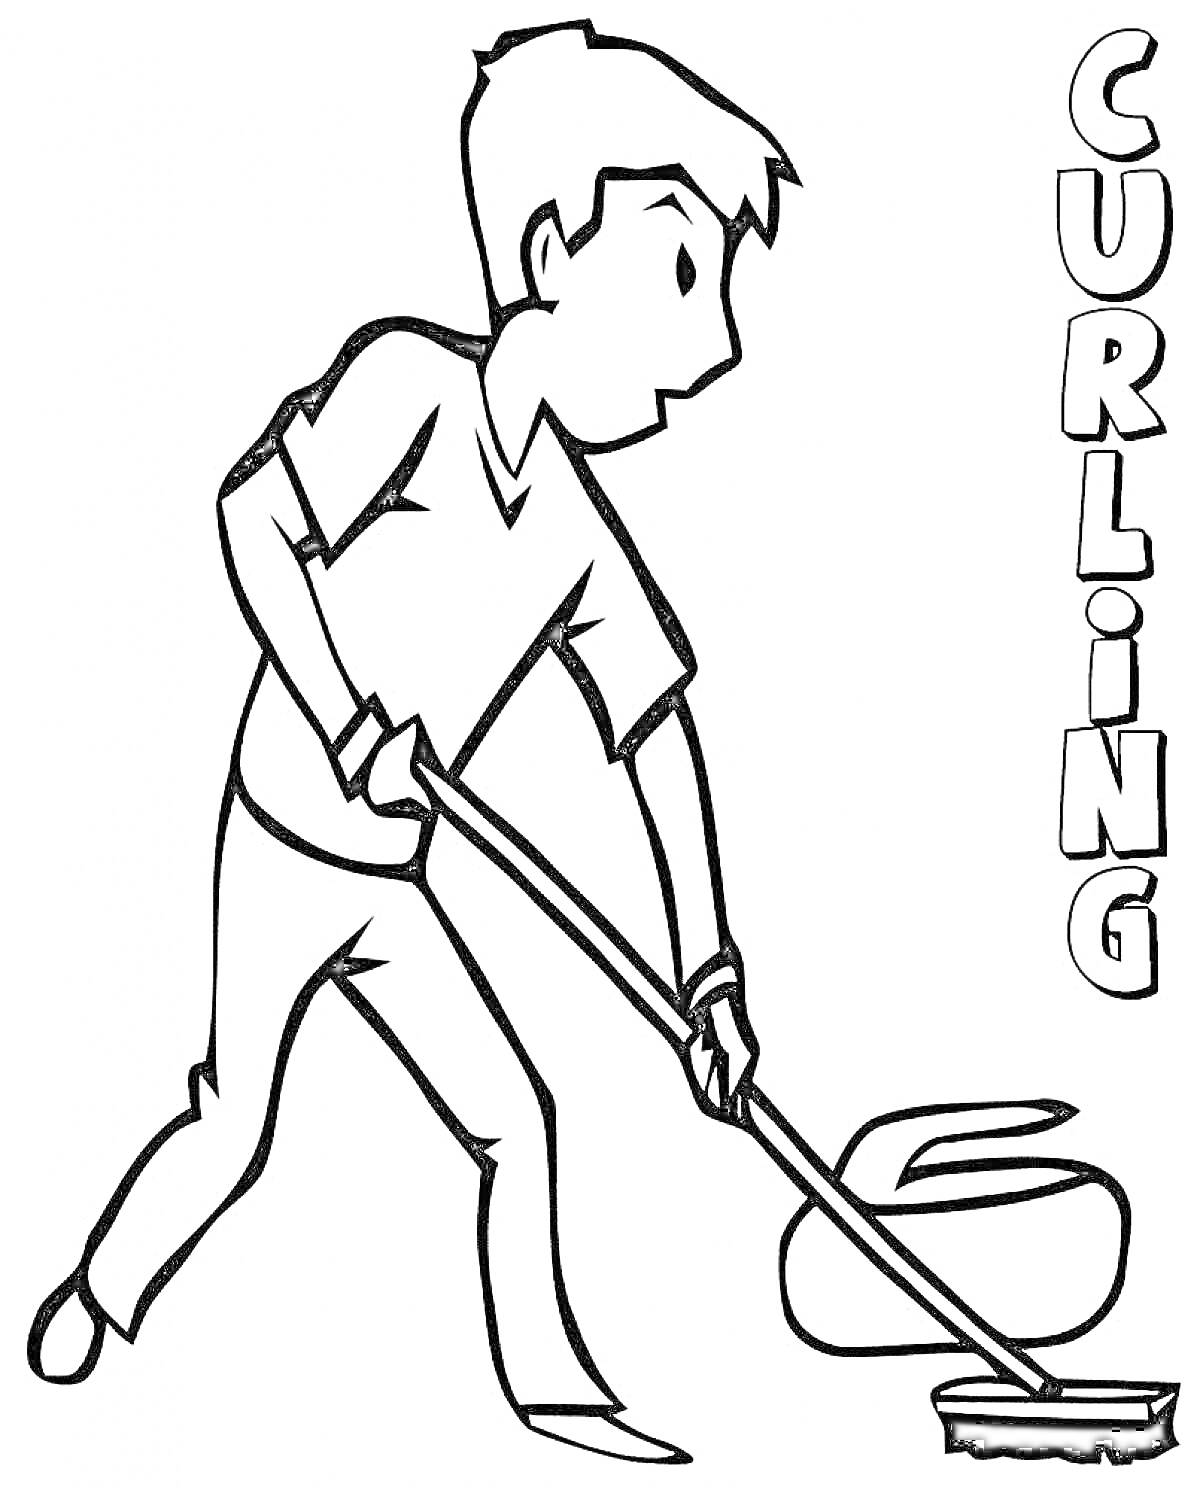 Раскраска Человек, убирающий лед щеткой для кёрлинга, рядом с камнем для кёрлинга, надпись CURLING.